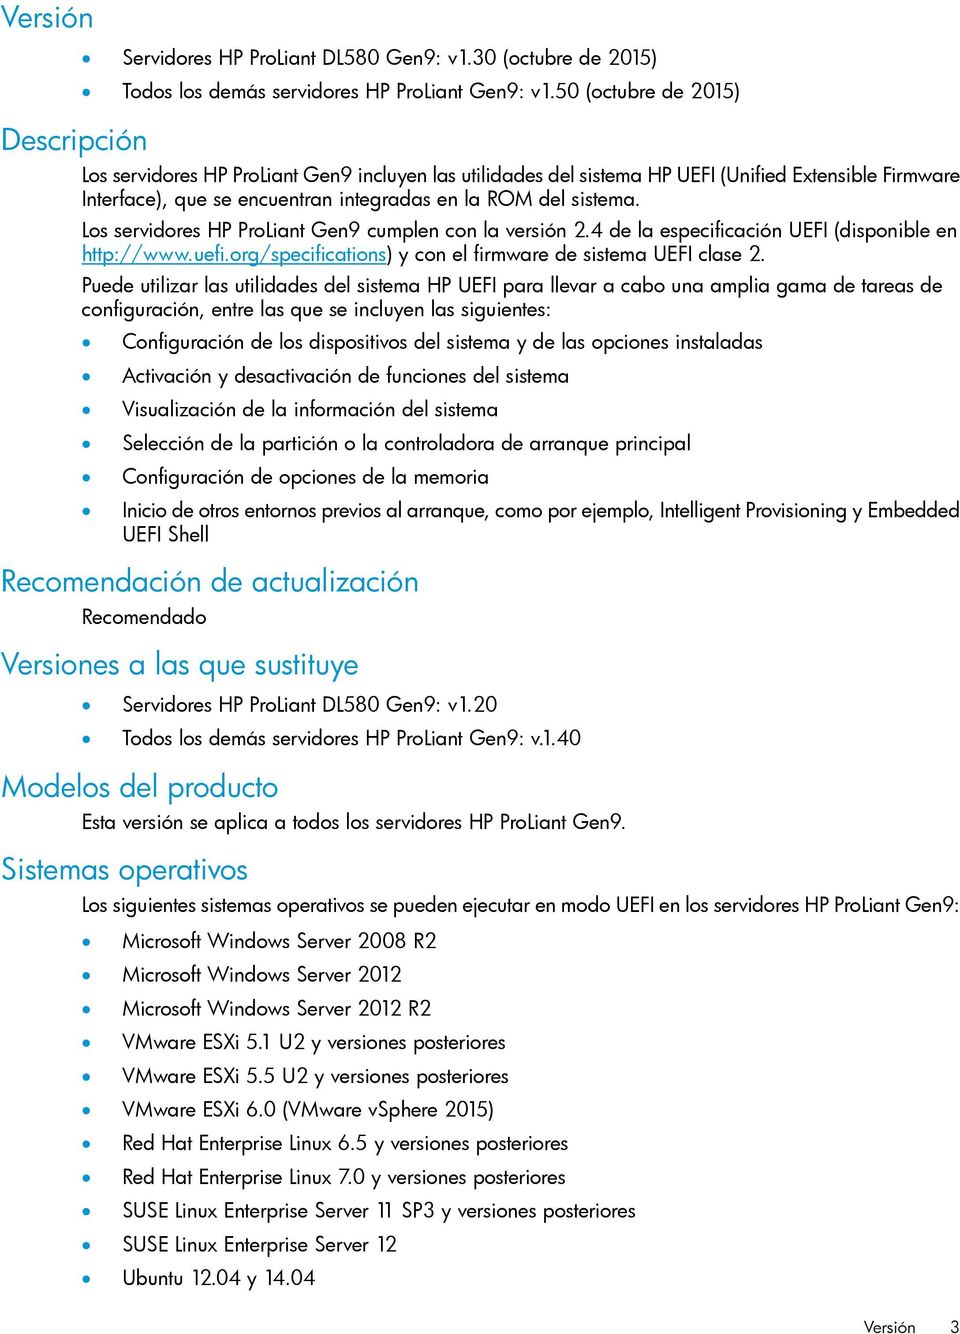 Los servidores HP ProLiant Gen9 cumplen con la versión 2.4 de la especificación UEFI (disponible en http://www.uefi.org/specifications) y con el firmware de sistema UEFI clase 2.